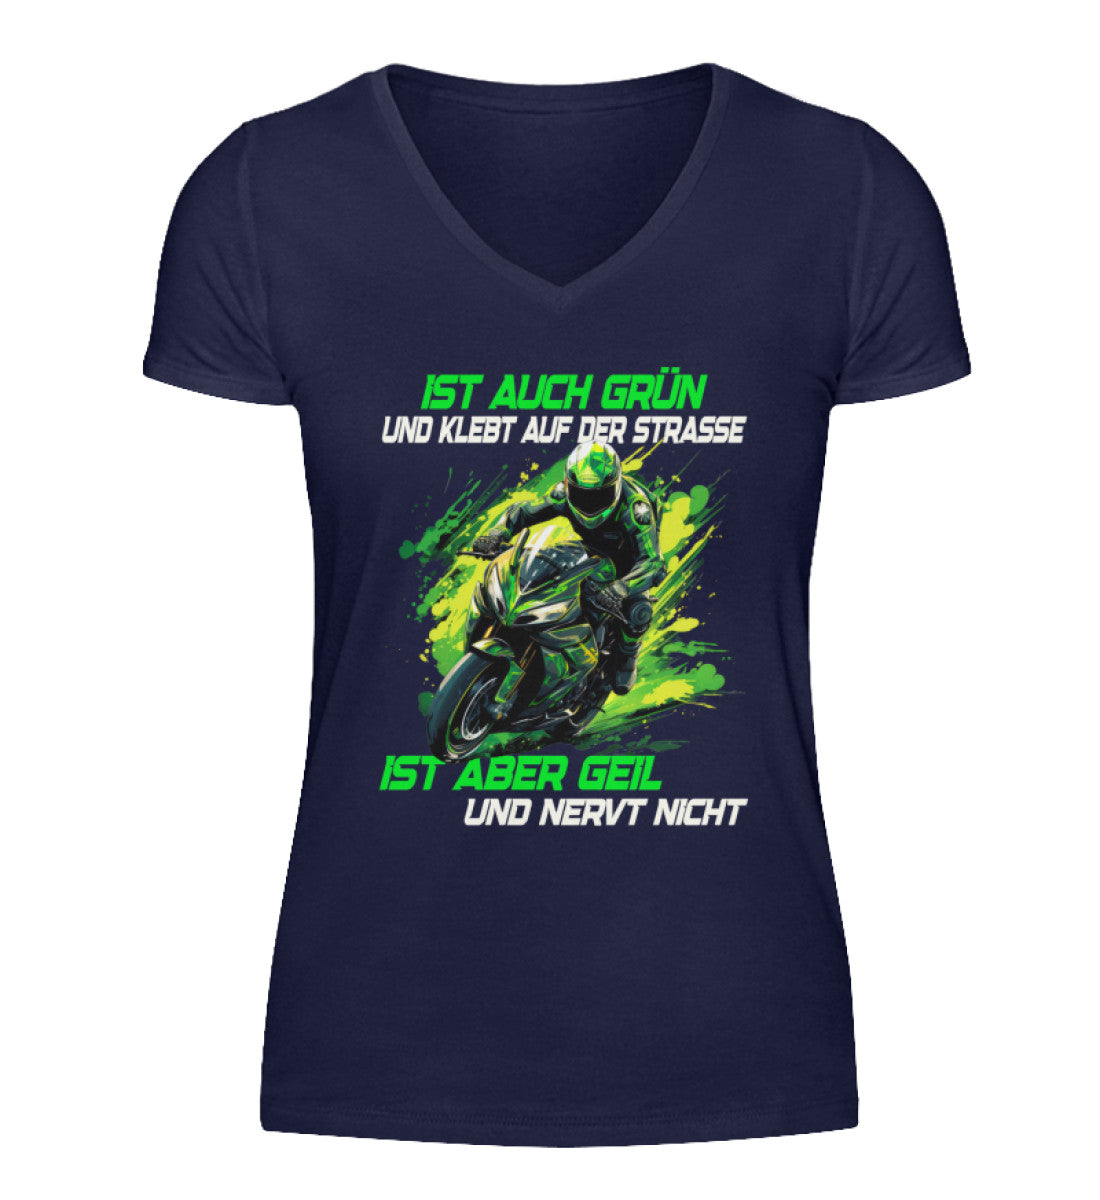 Ein T-Shirt mit V-Ausschnitt für Motorradfahrerinnen von Wingbikers mit dem Aufdruck, Supersportler - Ist auch grün und klebt auf der Straße, ist aber geil und nervt nicht, in navy blau.